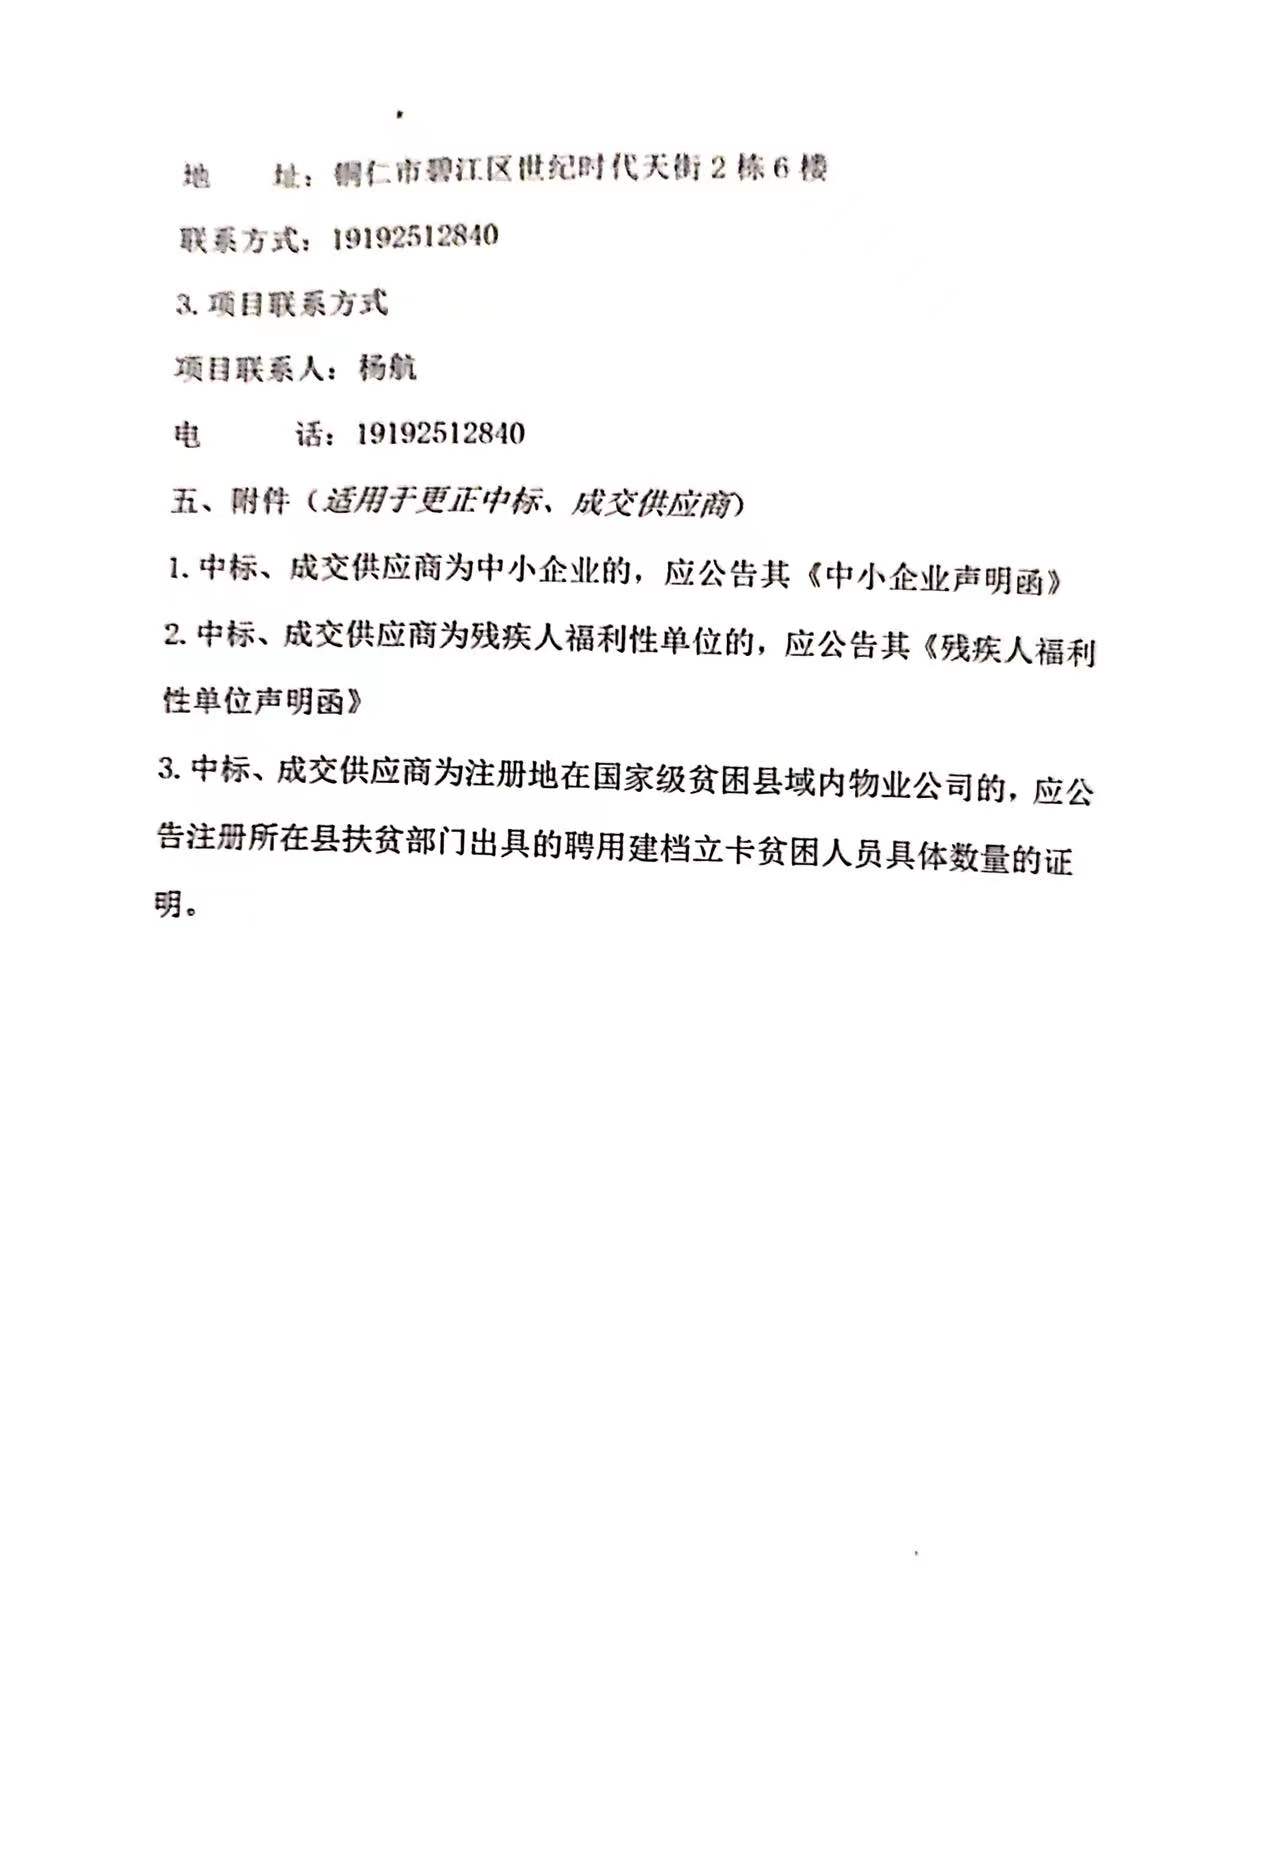 铜仁市天然气管道县县通工程穿越铁路安全招标更正公告